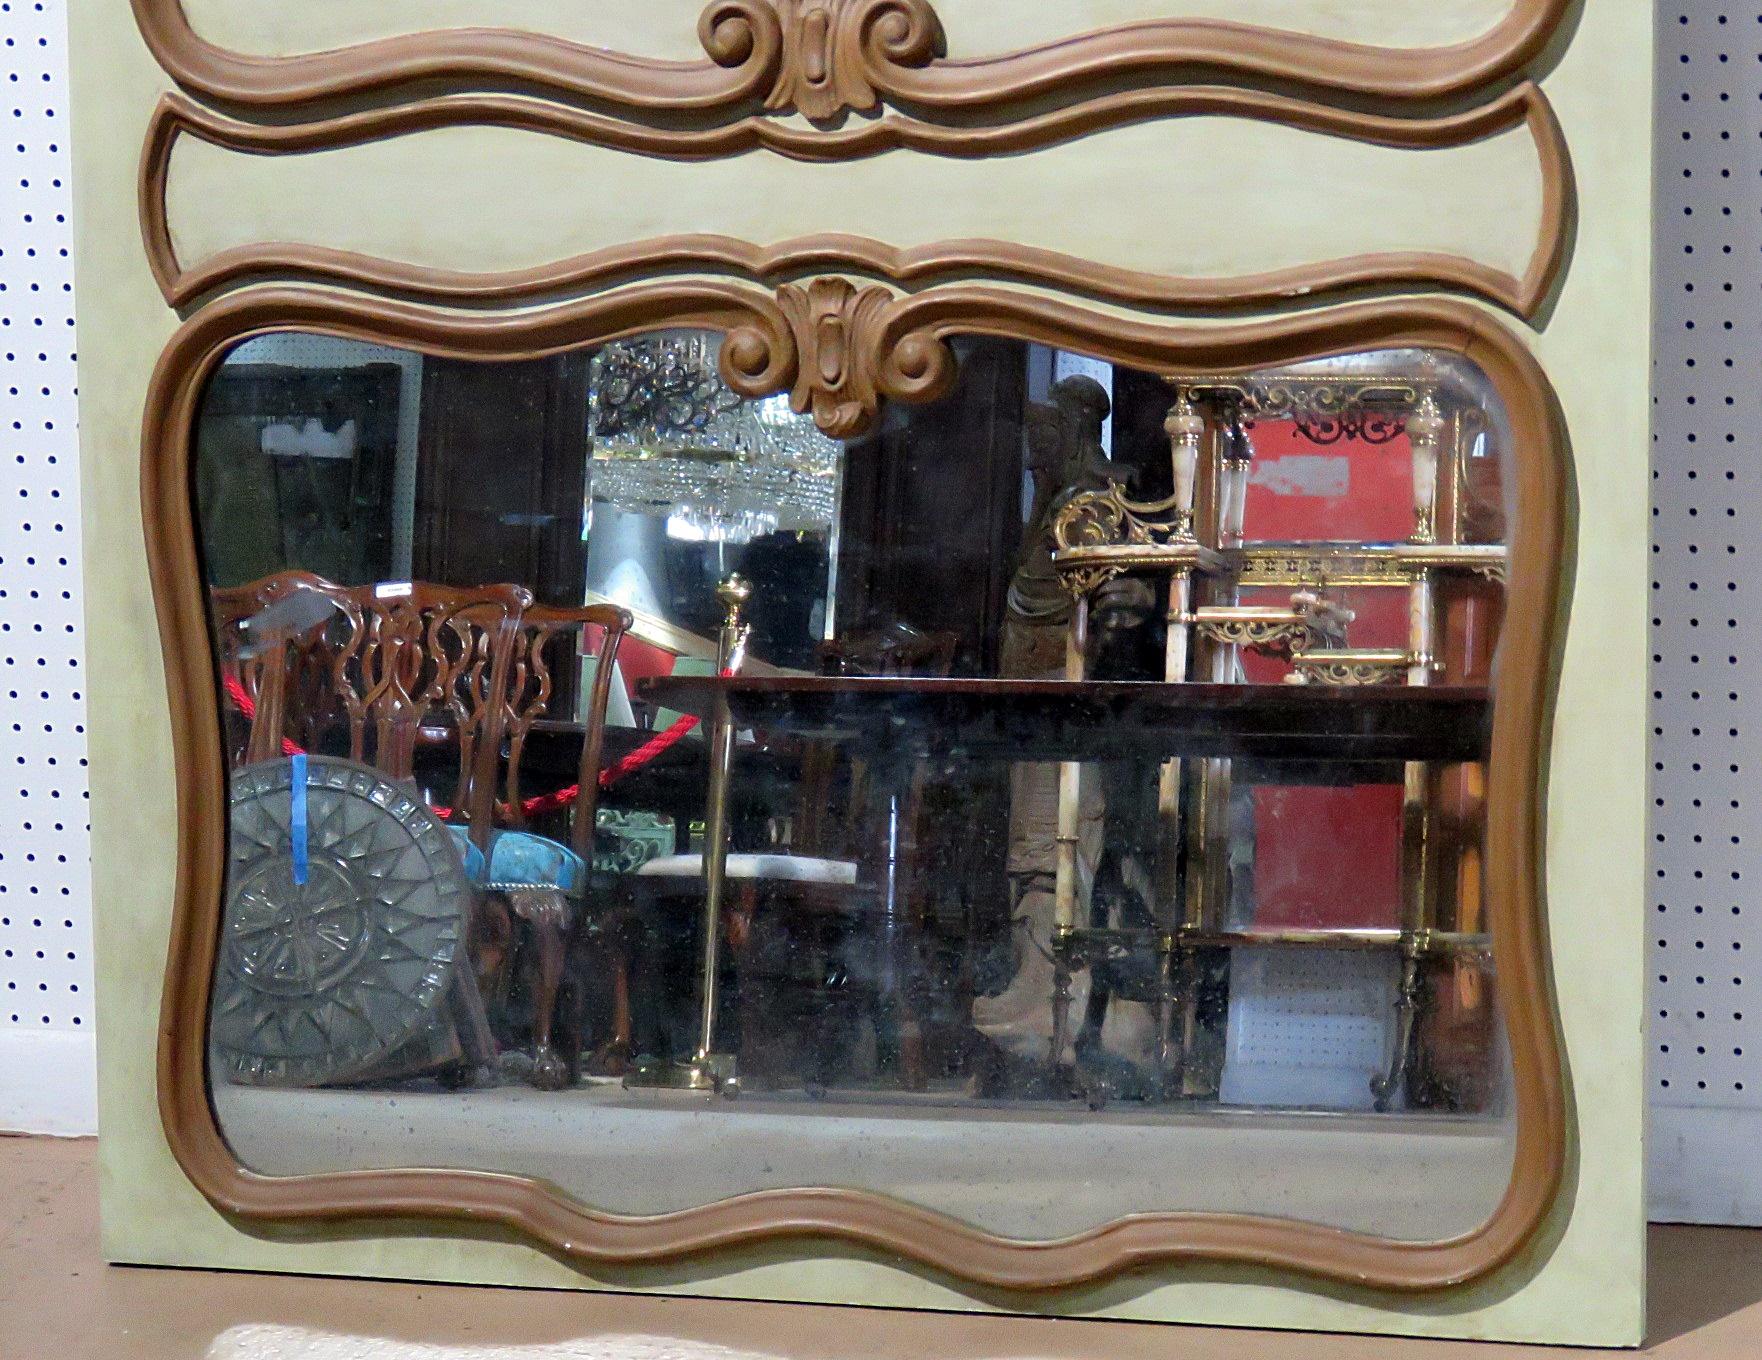 Dieser wunderschöne, in Italien gefertigte Spiegel wurde als perfekte Nachbildung eines antiken französischen Trumeau-Spiegels entworfen. Die Schnitzerei ist eng und präzise, und der Spiegel ist groß und wird ein dynamischer Blickpunkt in Ihrem Haus